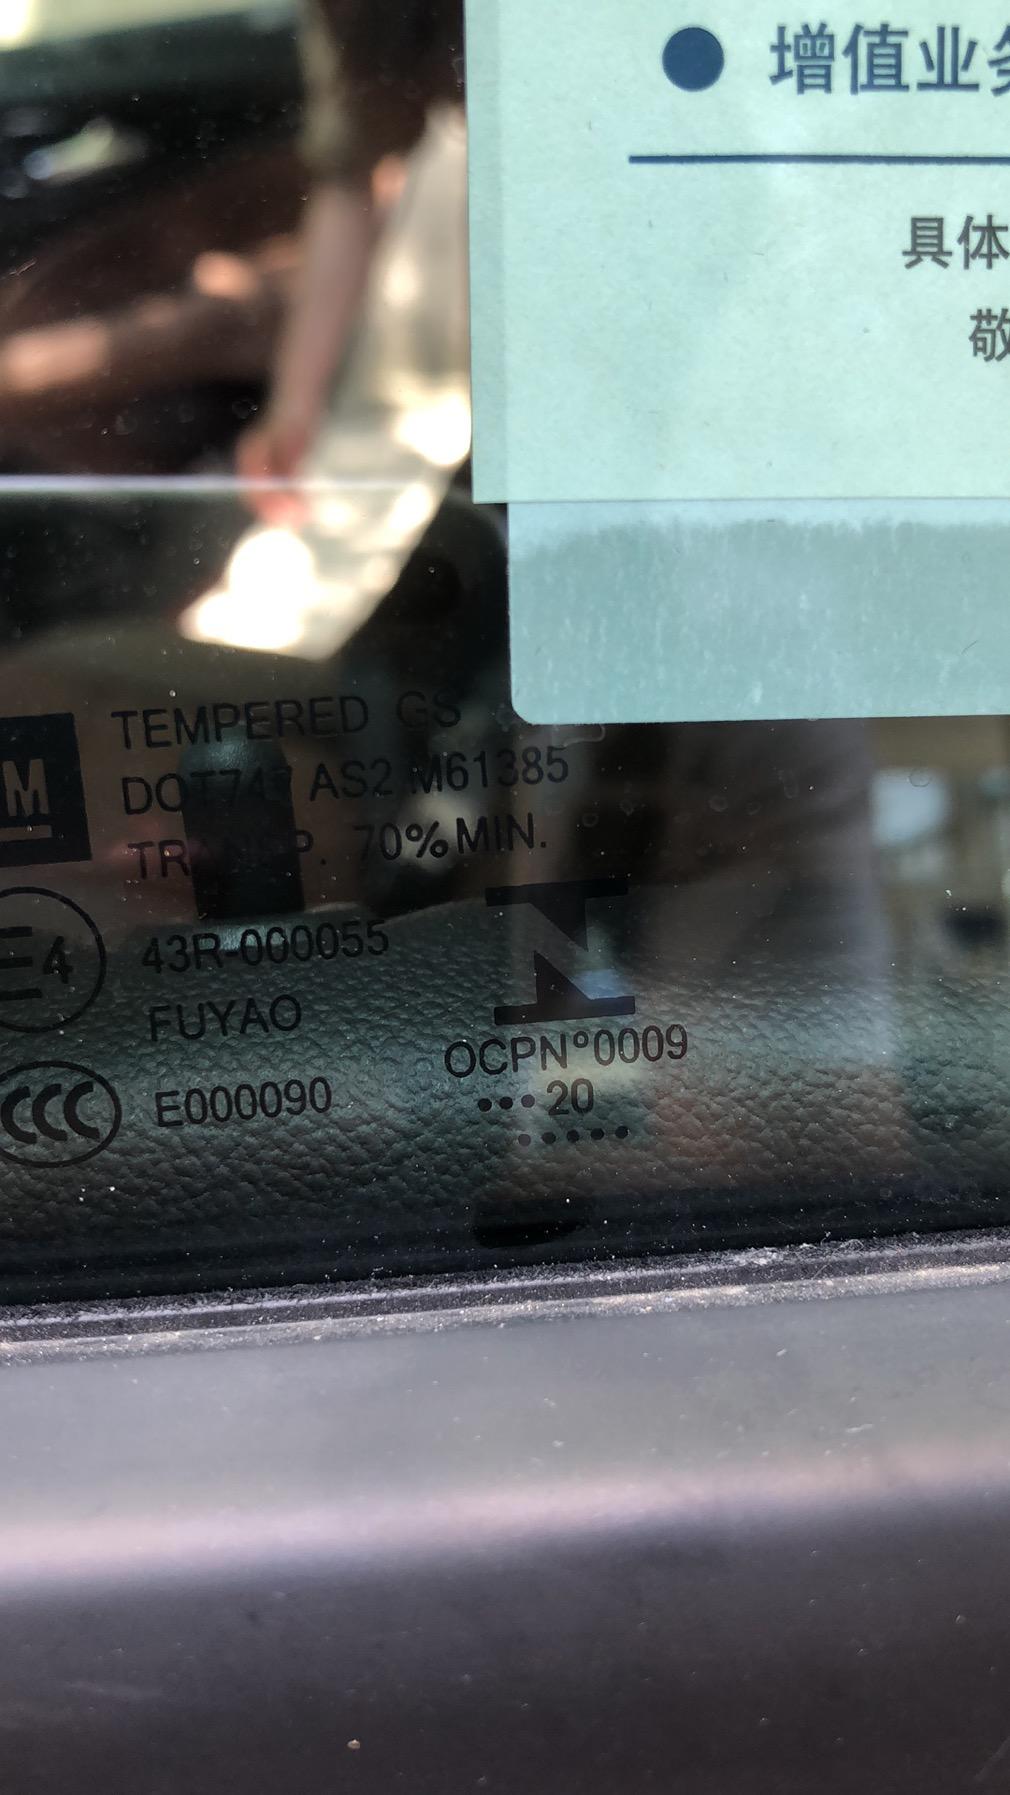 别克君威 提车中 这个车窗日期下面黑点是代表什么，知道数字前面黑点用7减，数字后面的黑点用13减，数字下面黑点代表